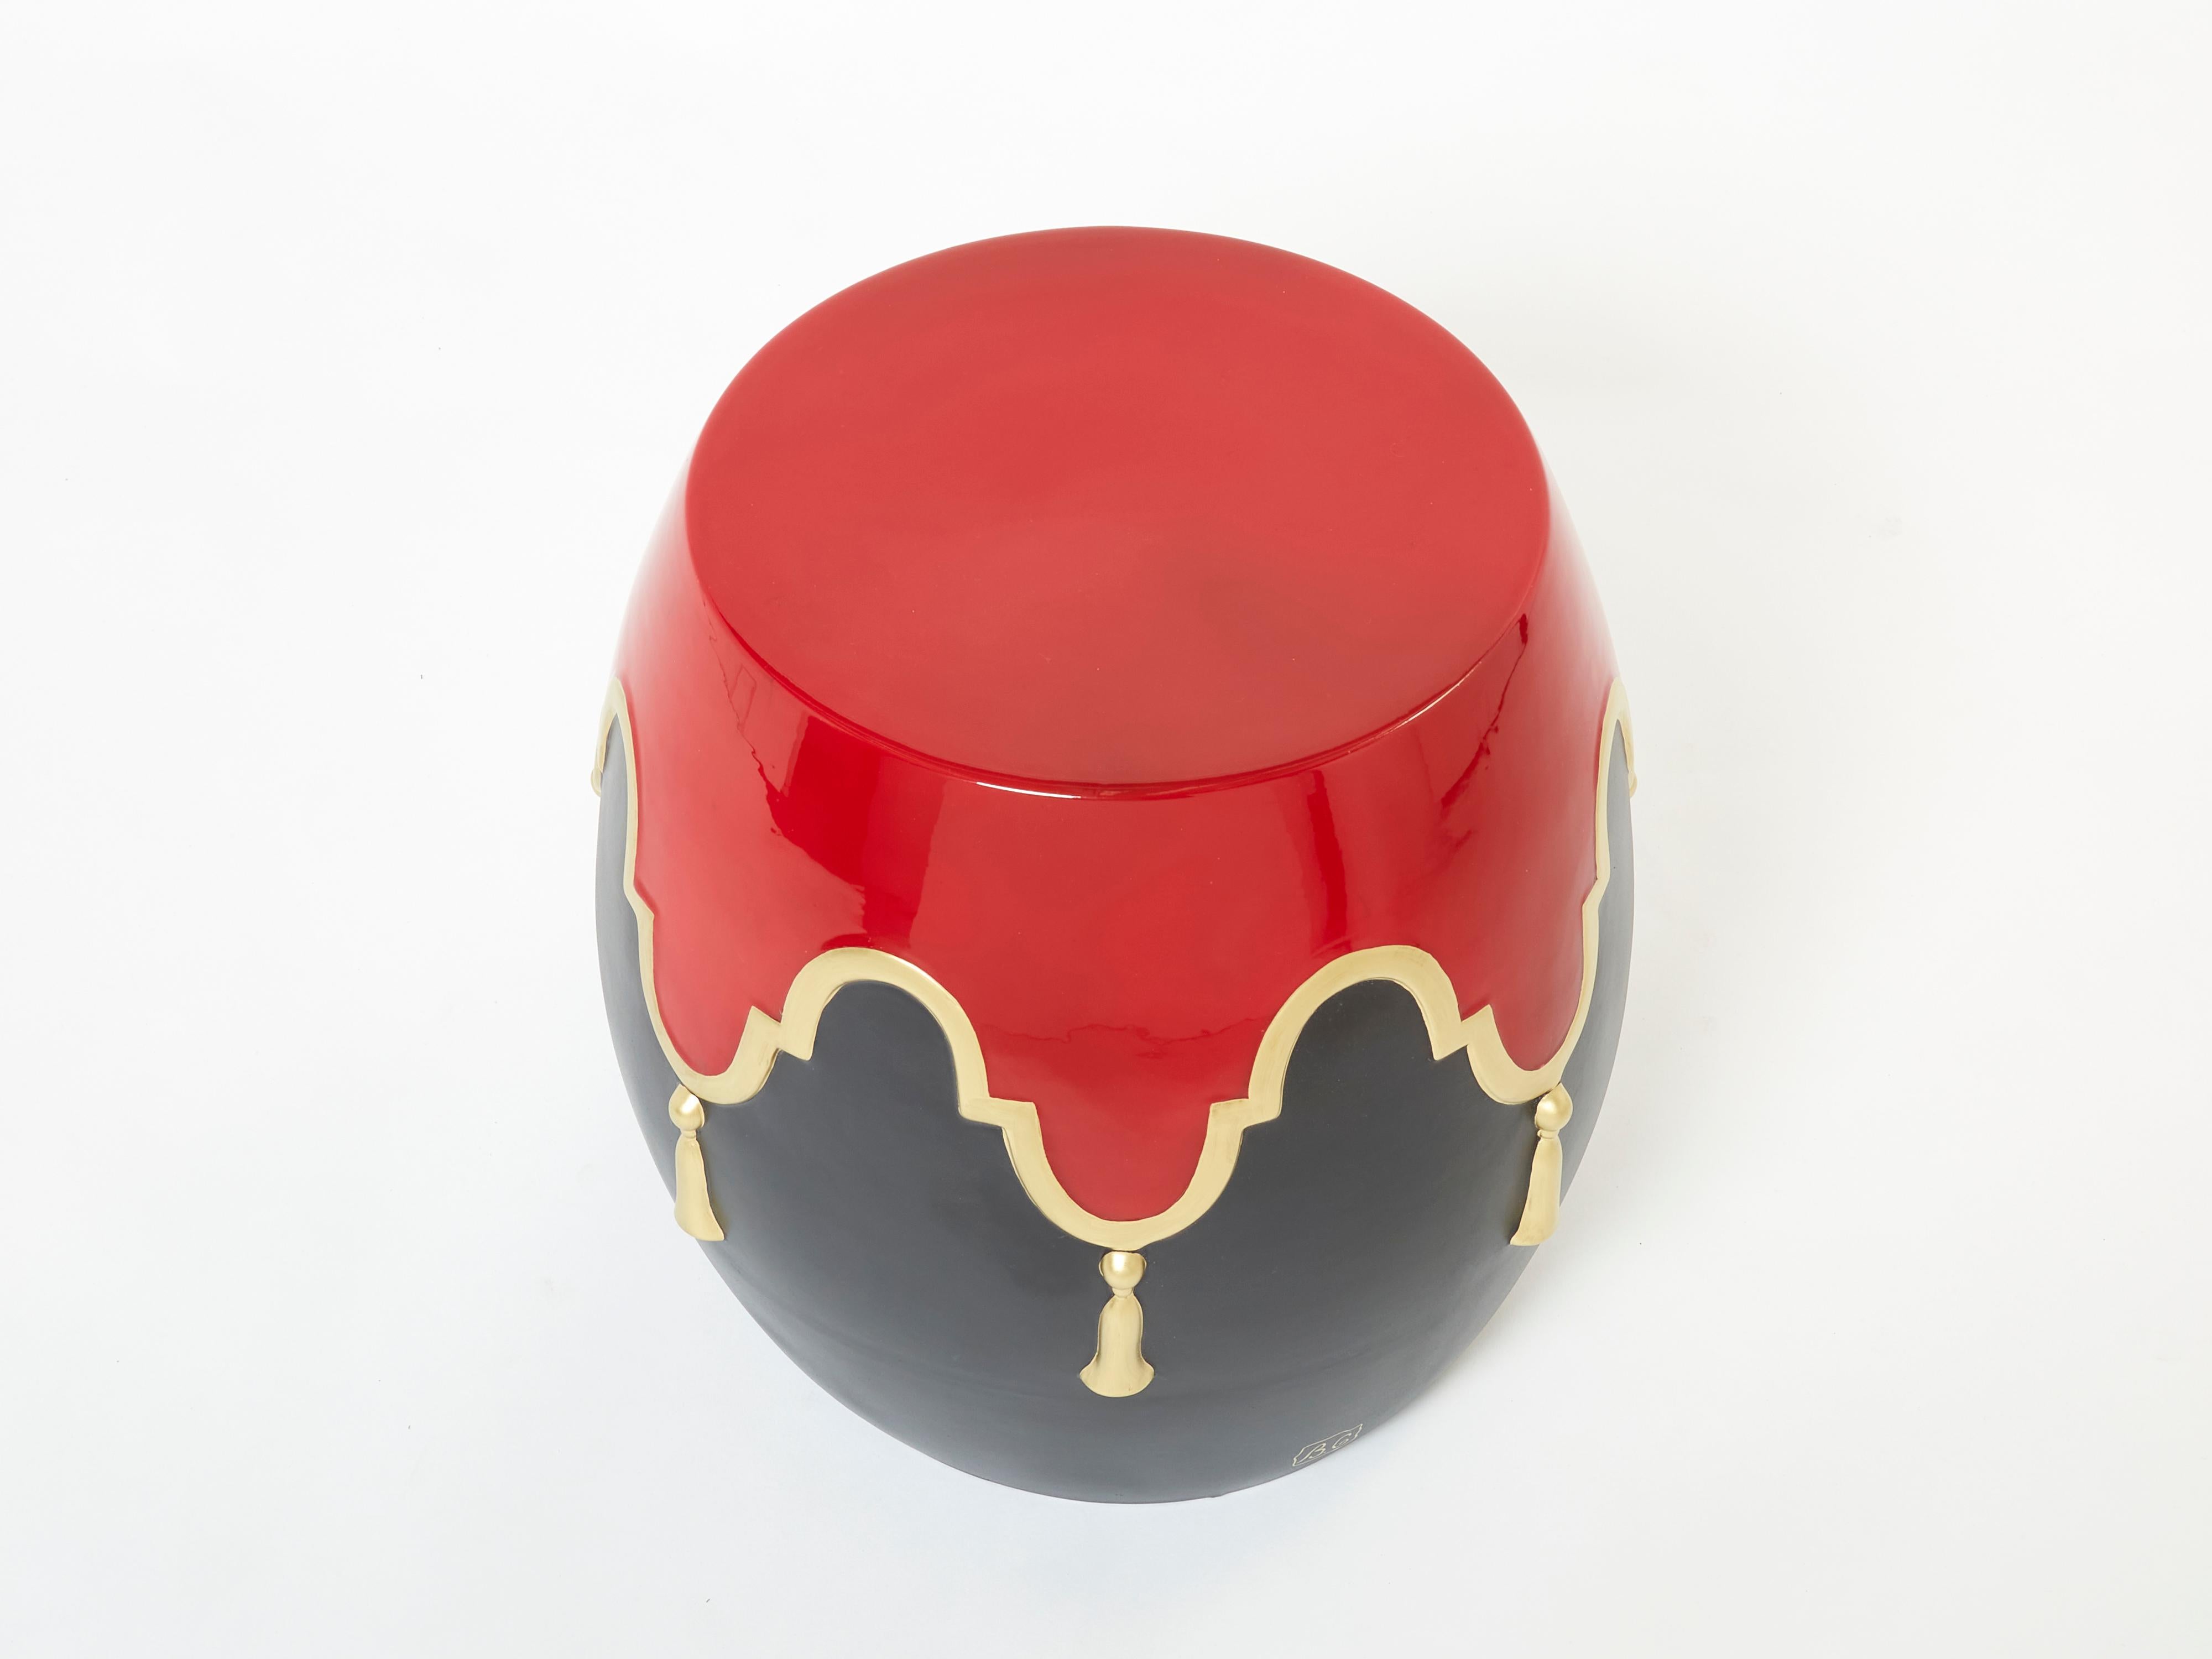 French Garouste & Bonetti Signed Ceramic Stool Side Table 1990 For Sale